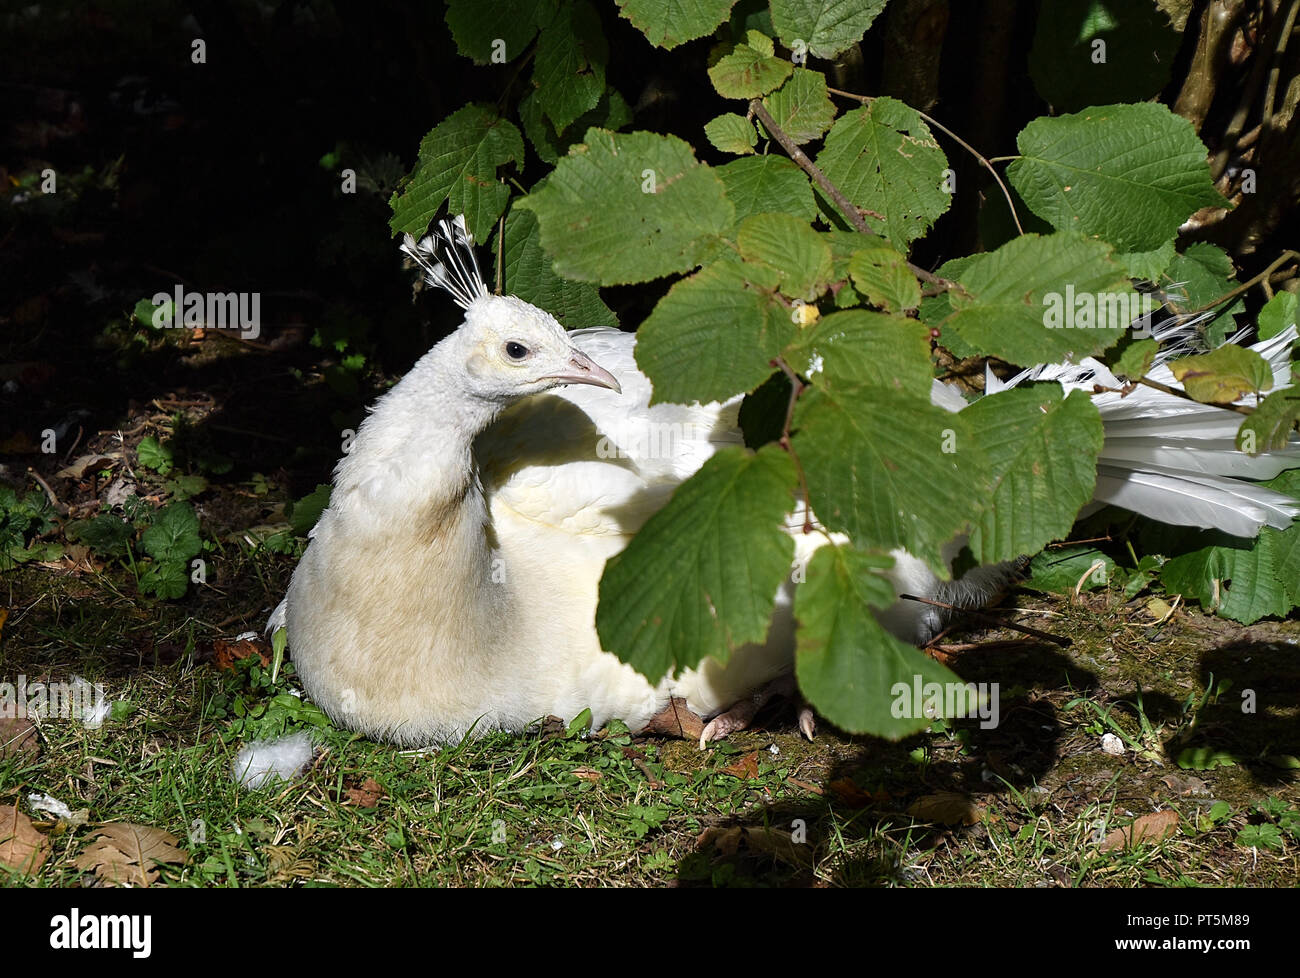 White Peafowl Stock Photo